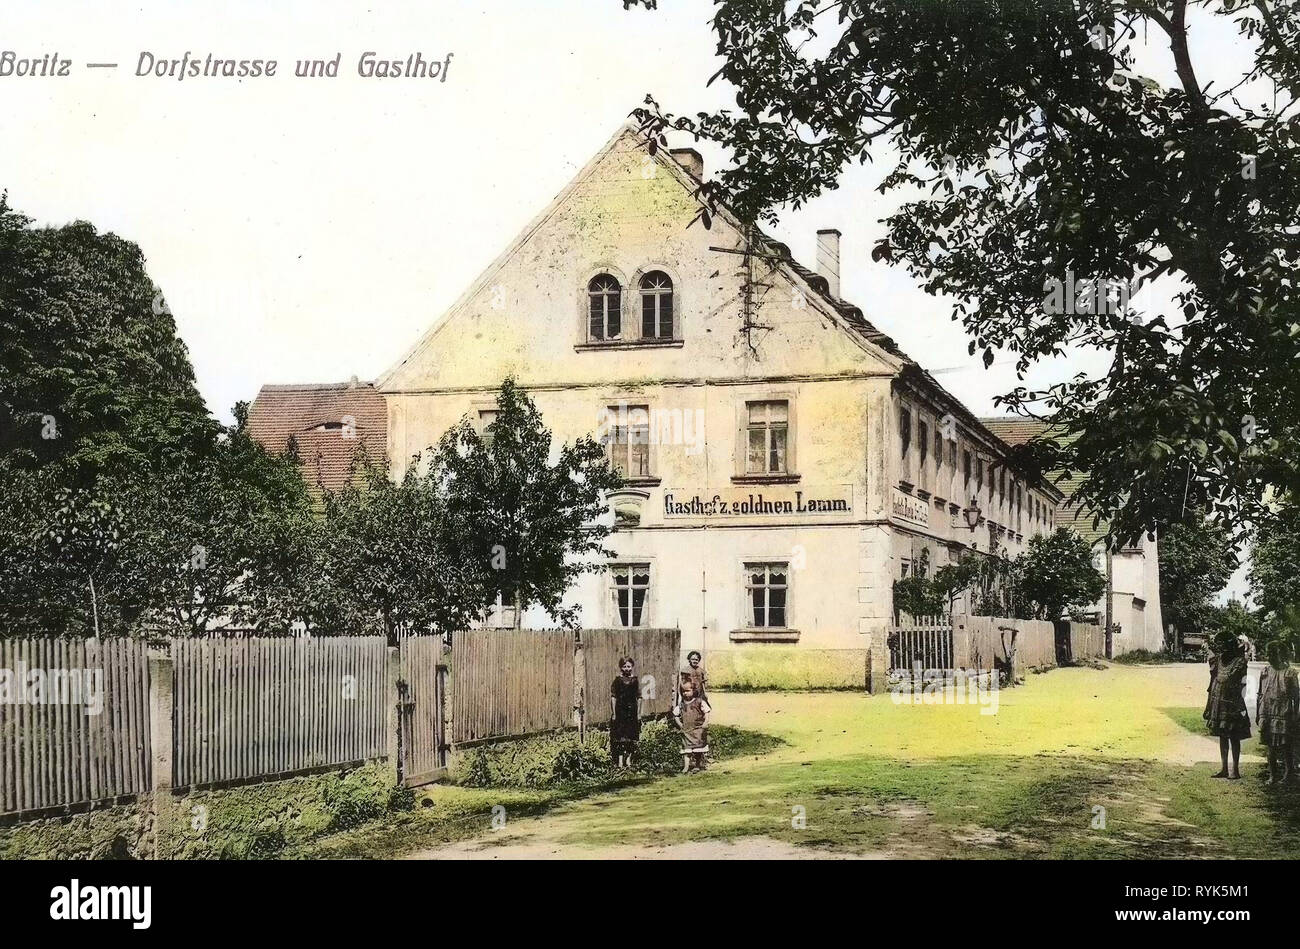 Restaurants in Landkreis Meißen, Boritz, 1916, Landkreis Meißen, Dorfstraße und Gasthof zum goldenen Lamm, Germany Stock Photo